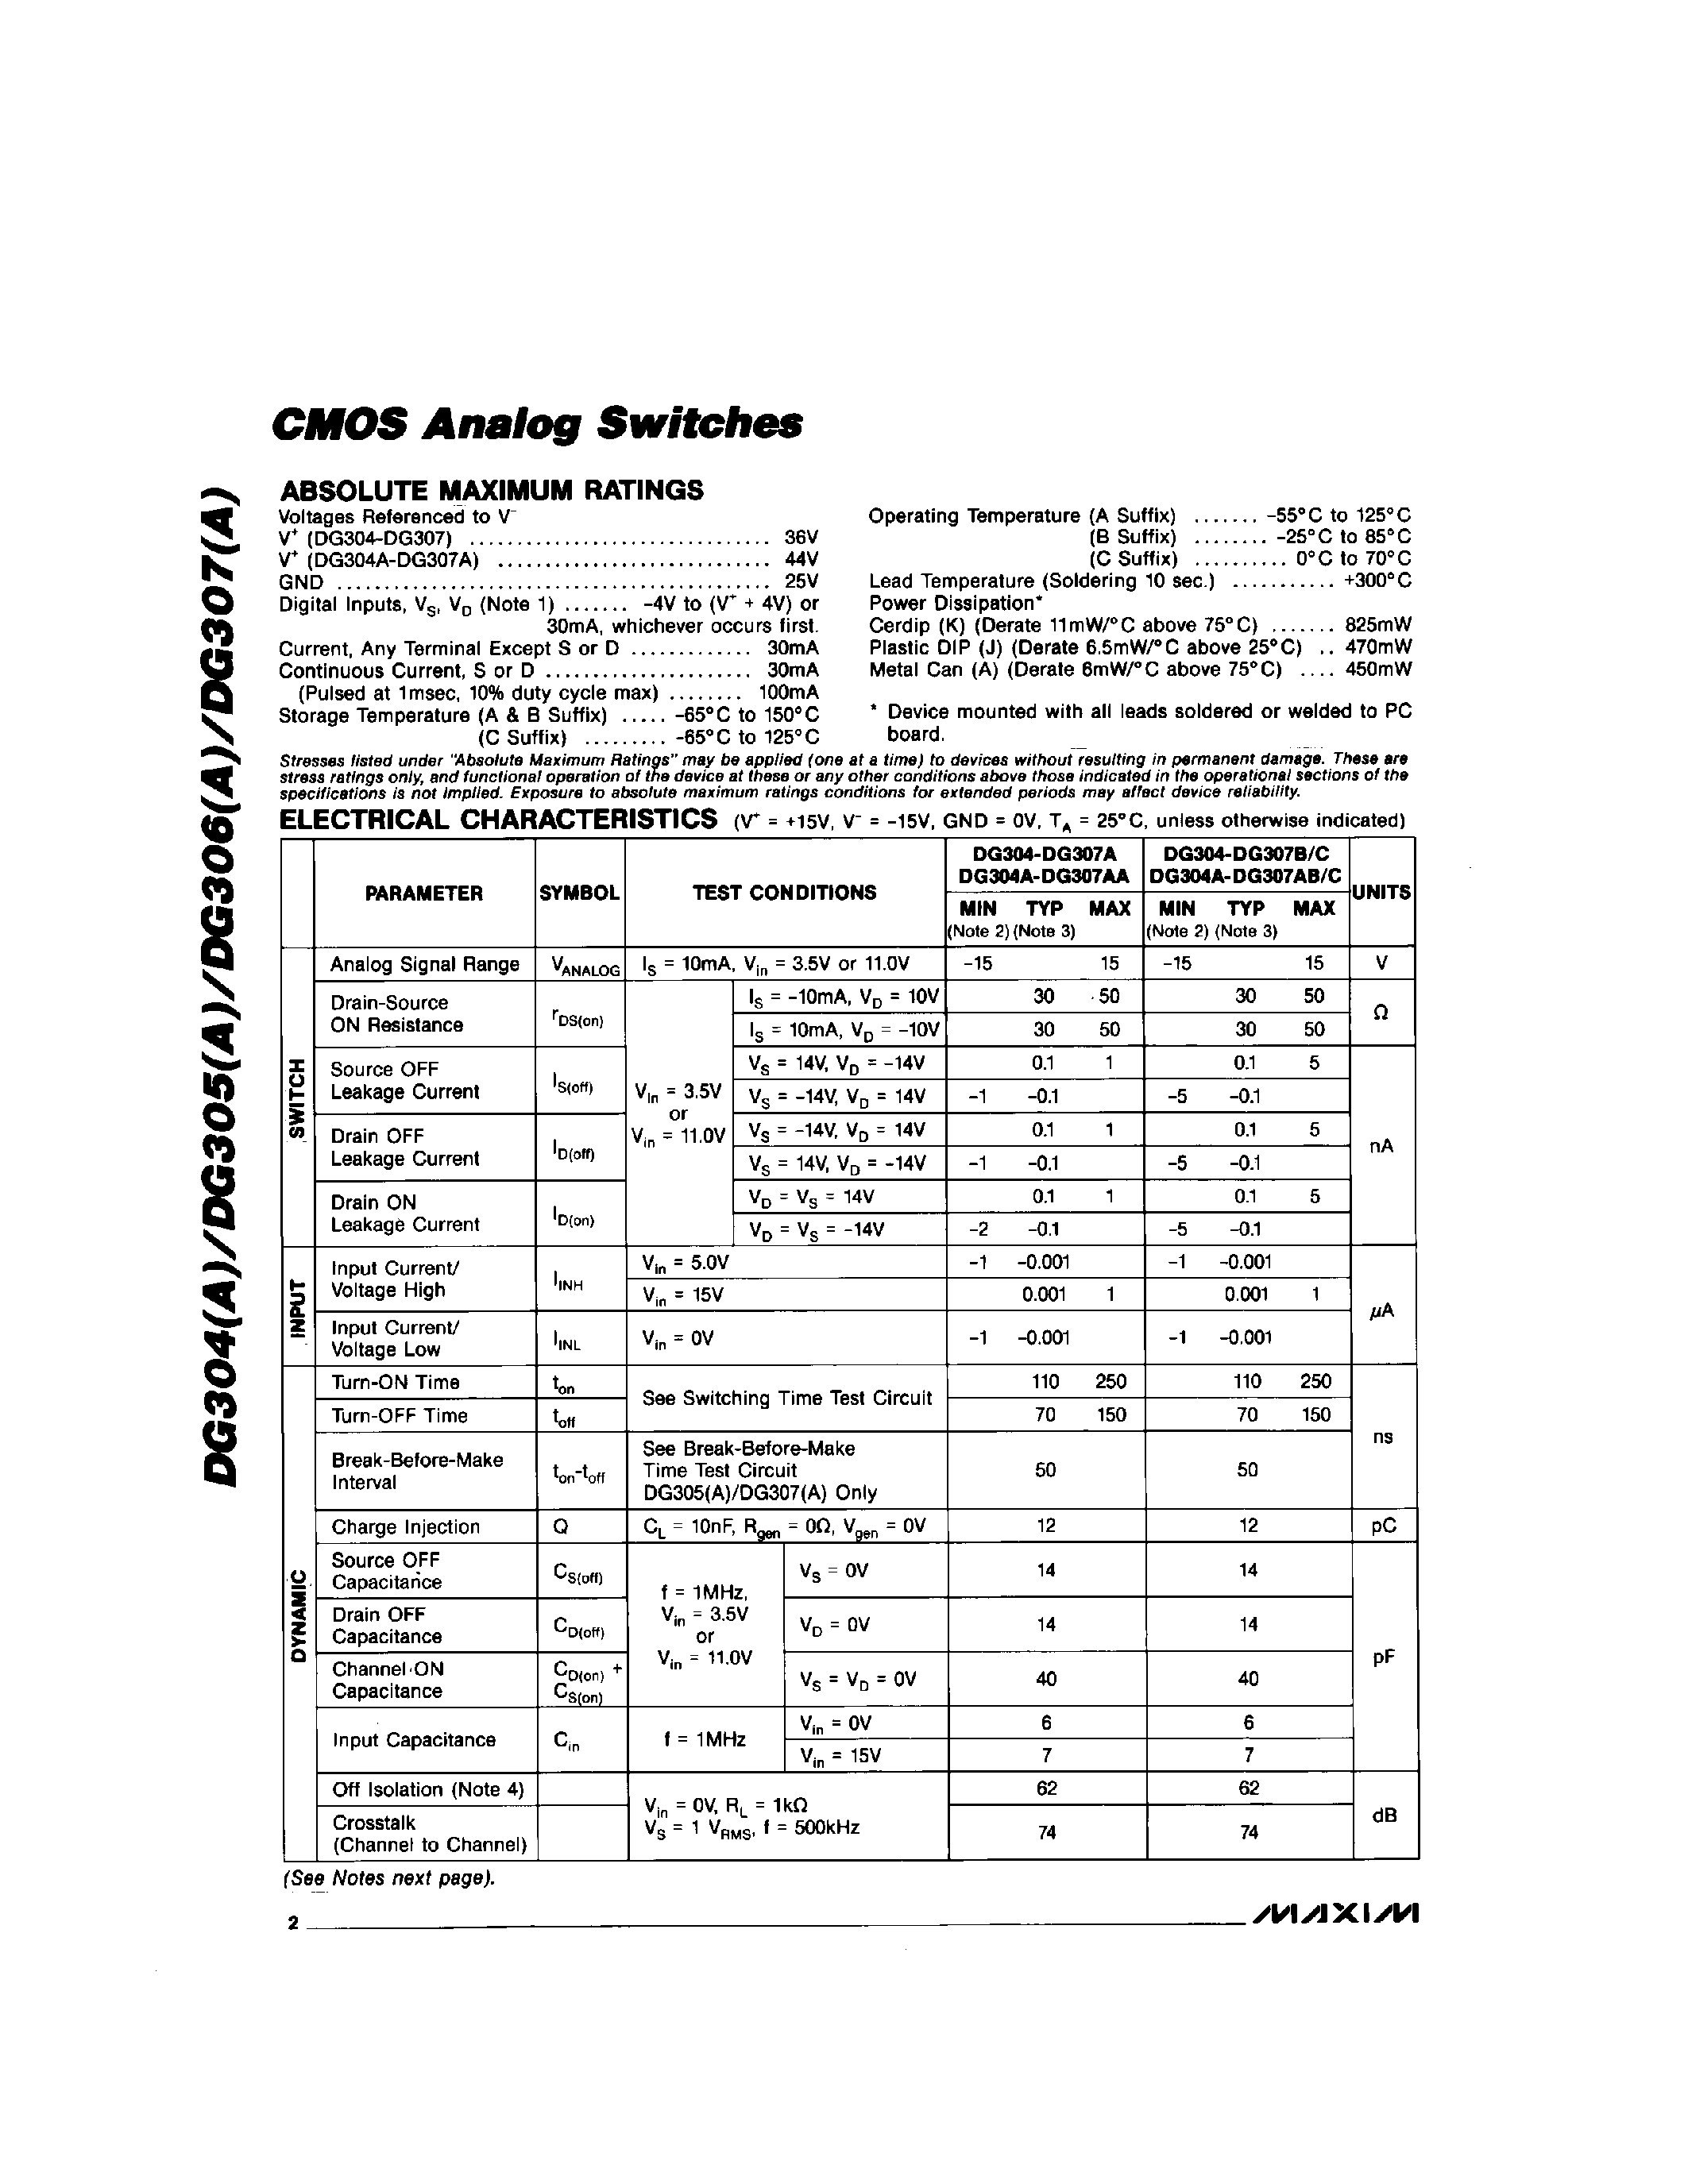 Даташит DG305AC/D - CMOS Analog Switchs страница 2